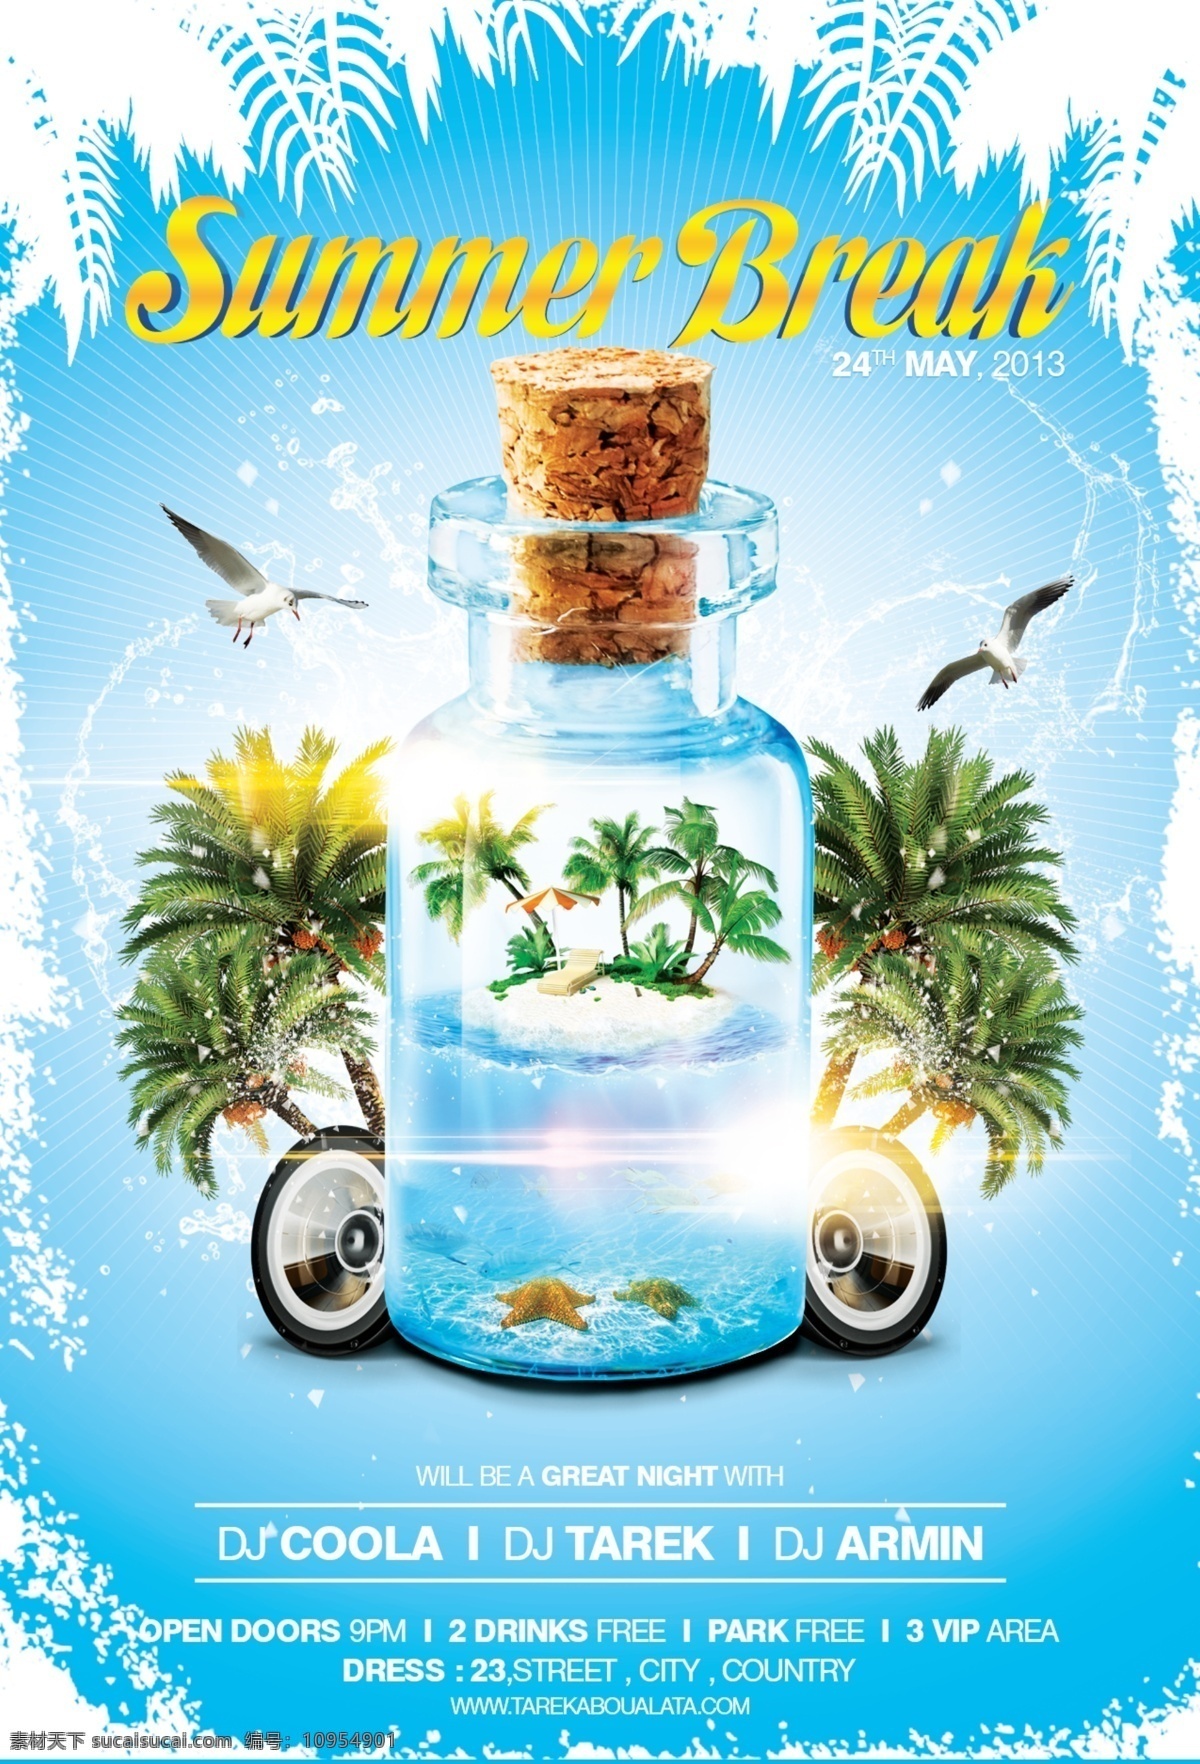 夏日 沙滩 派对 传单 玻璃瓶 传单设计 广告设计模板 海鸥 设计模板 树 派对传单 传单样板 传单设计风格 源文件 psd源文件